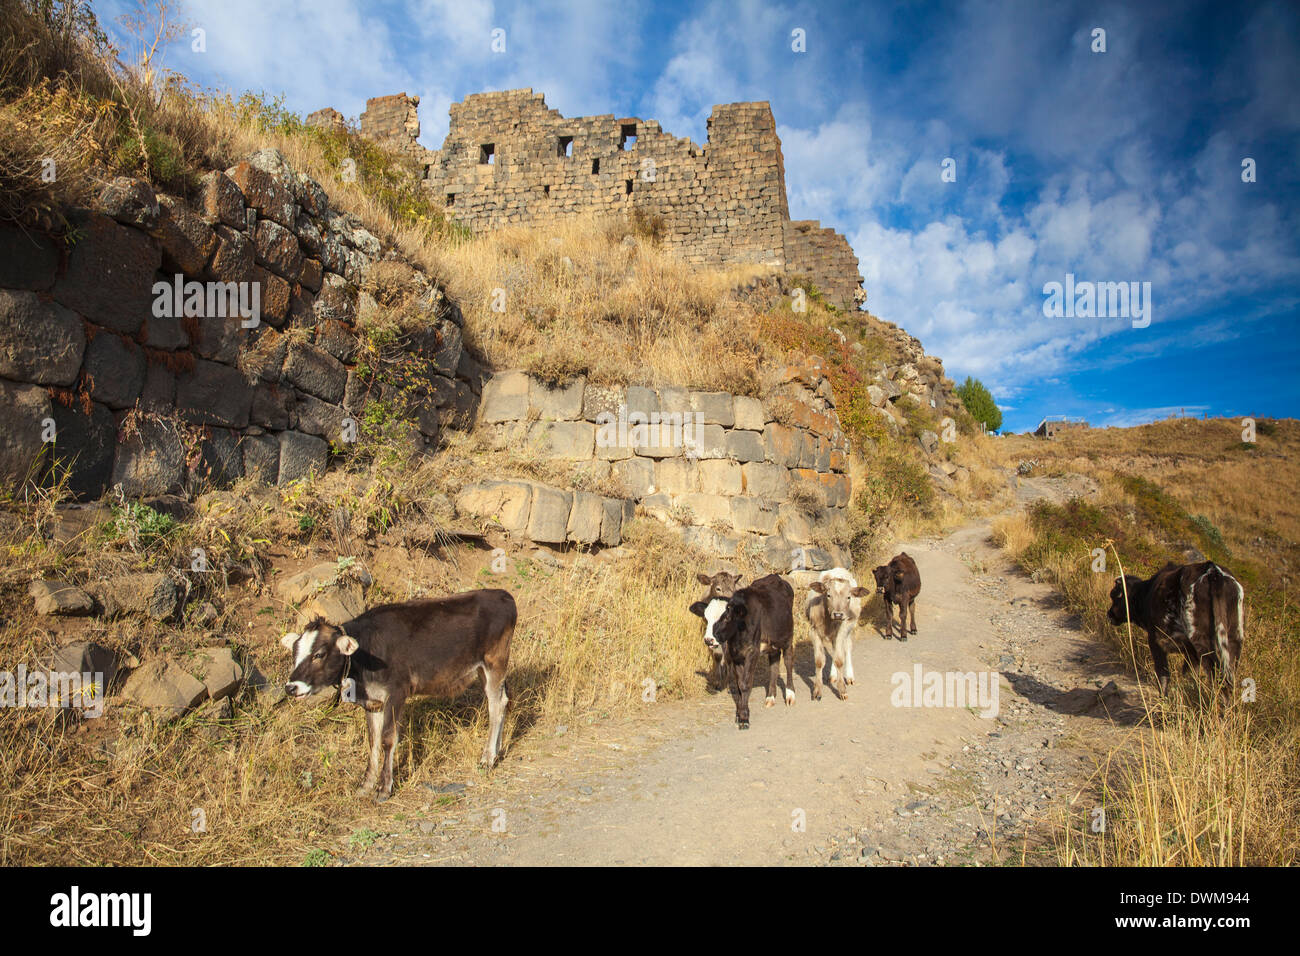 Amberd fortress situato sulle pendici del monte Aragats, Yerevan, Aragatsotn, Armenia, Asia Centrale, Asia Foto Stock